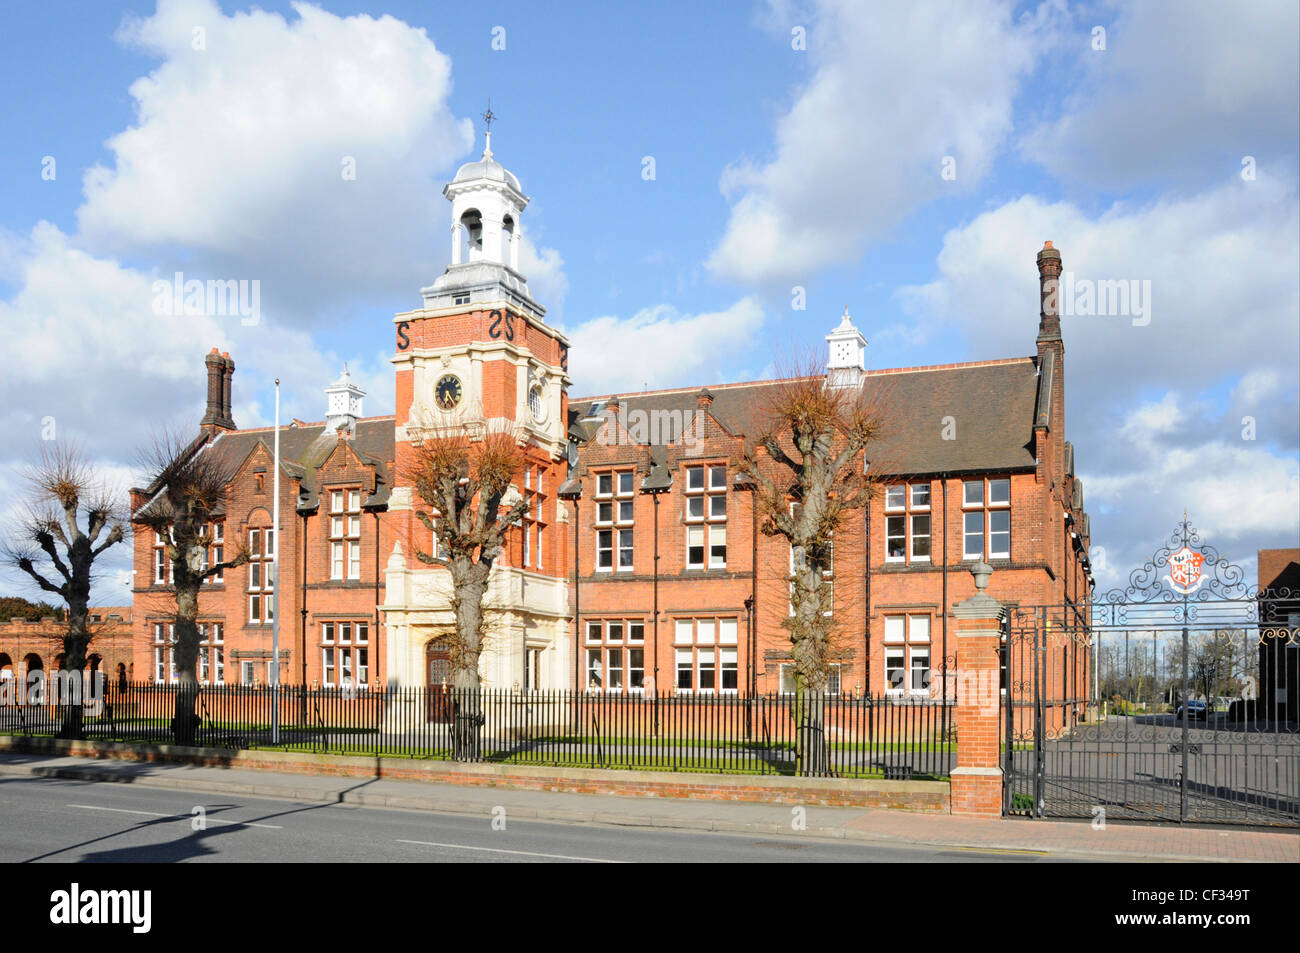 Brentwood School principales portes de bâtiment en brique et façade avant de l'éducation privée indépendante de jour et d'internat avec tour d'horloge dans l'Essex Angleterre Royaume-Uni Banque D'Images